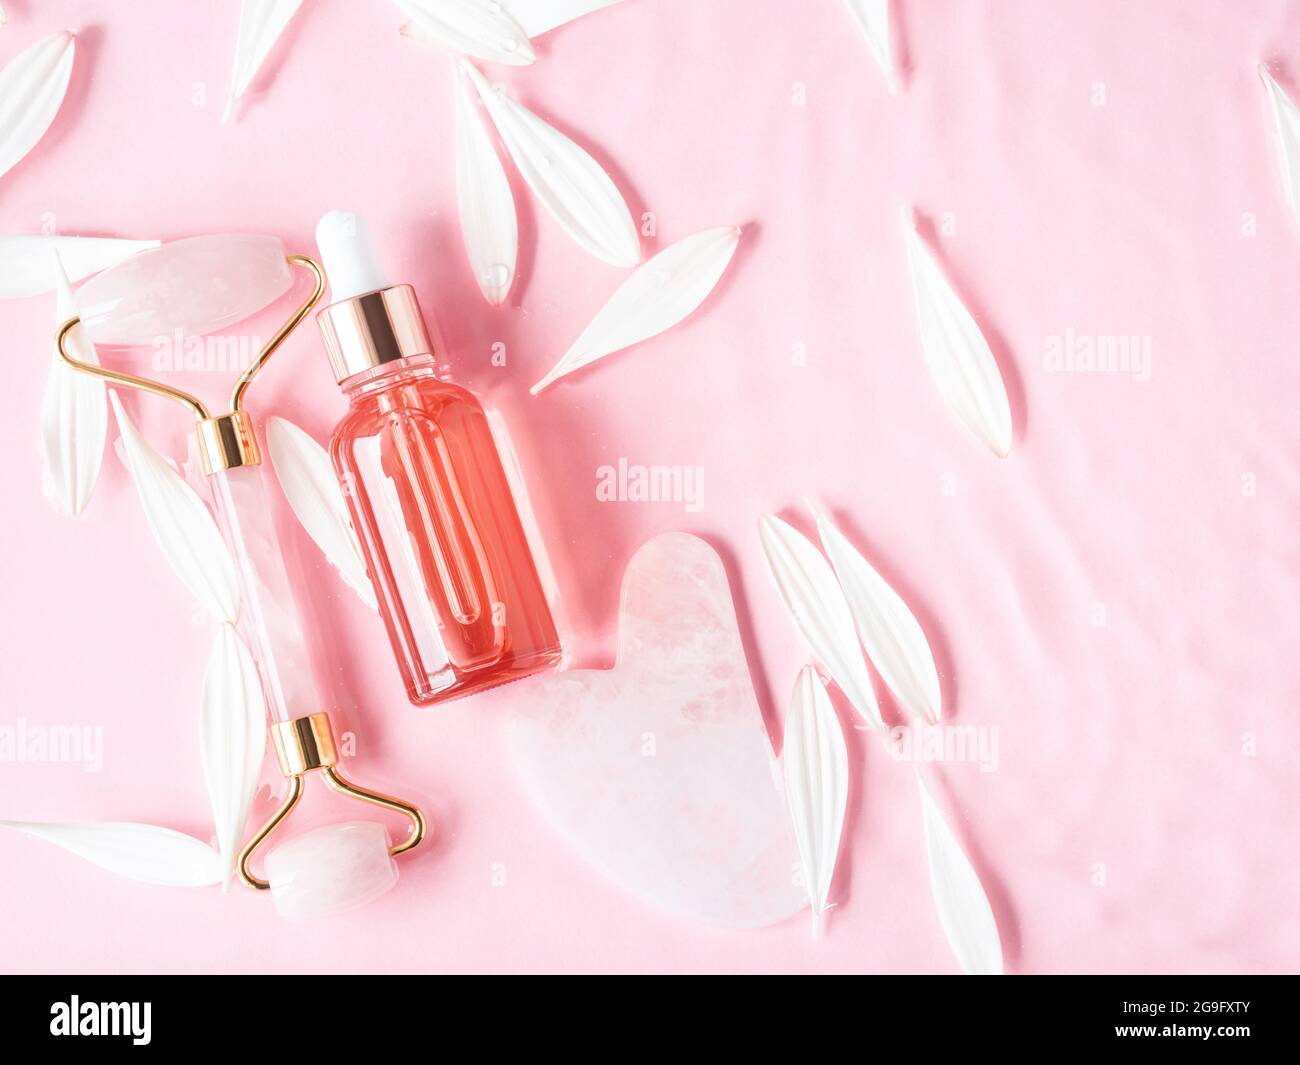 Bellezza cosmetica olio siero prodotto acido bottiglia e guasha rullo viso al quarzo su sfondo rosa Foto Stock